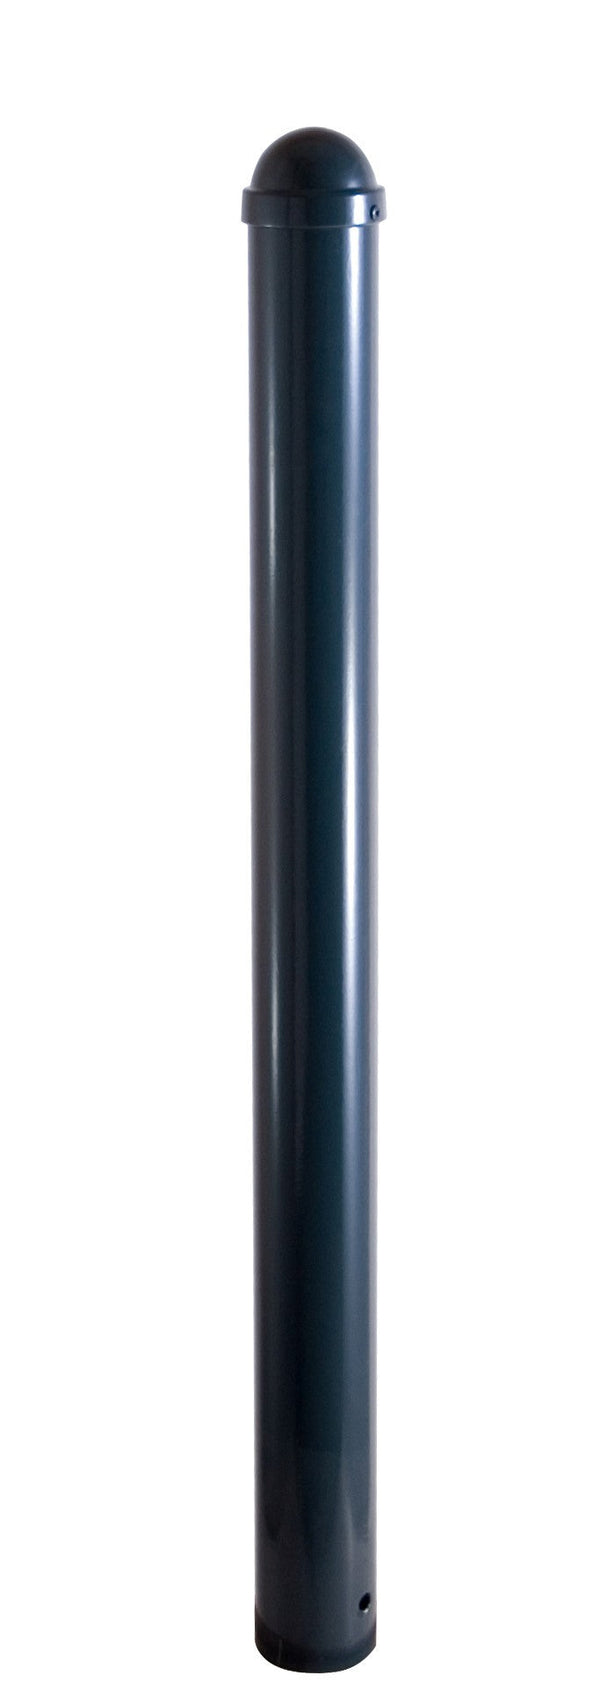 Absperr-Stilpfosten Serie 496: RAL 7016 mit Zierkappe